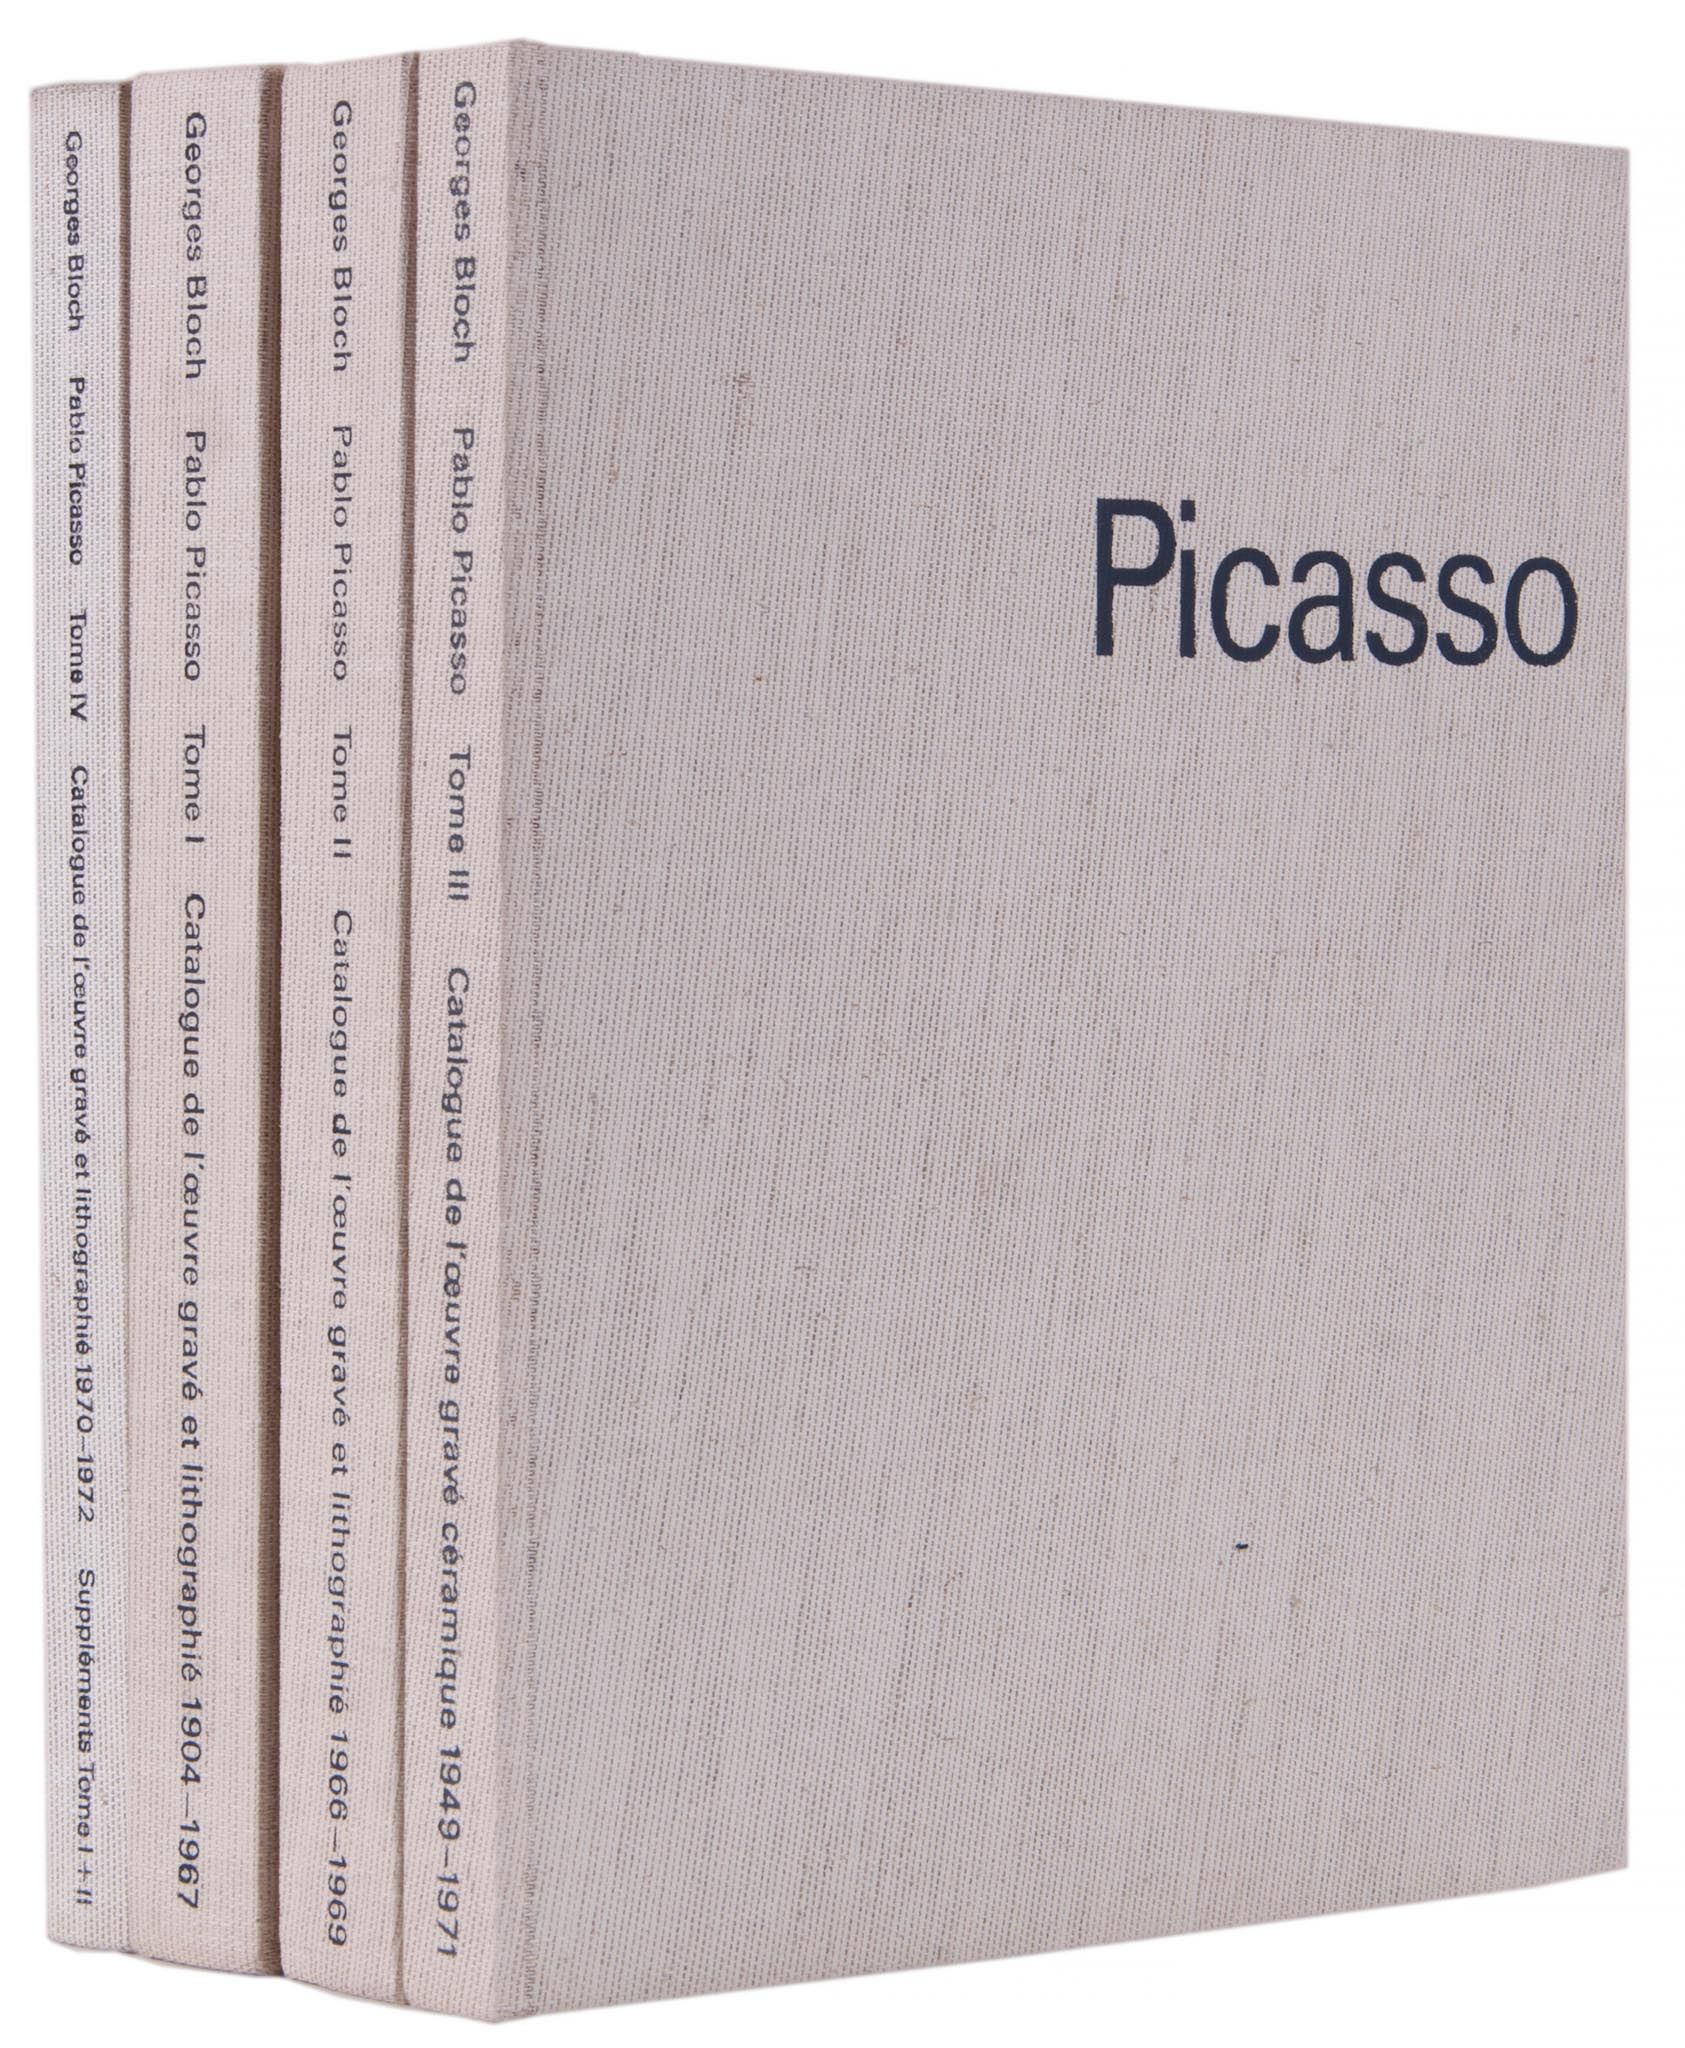 Pablo Picasso (1881-1973) - Bloch Vols. I-IV four volumes of the catalouge raisonne, 1971-1979, each